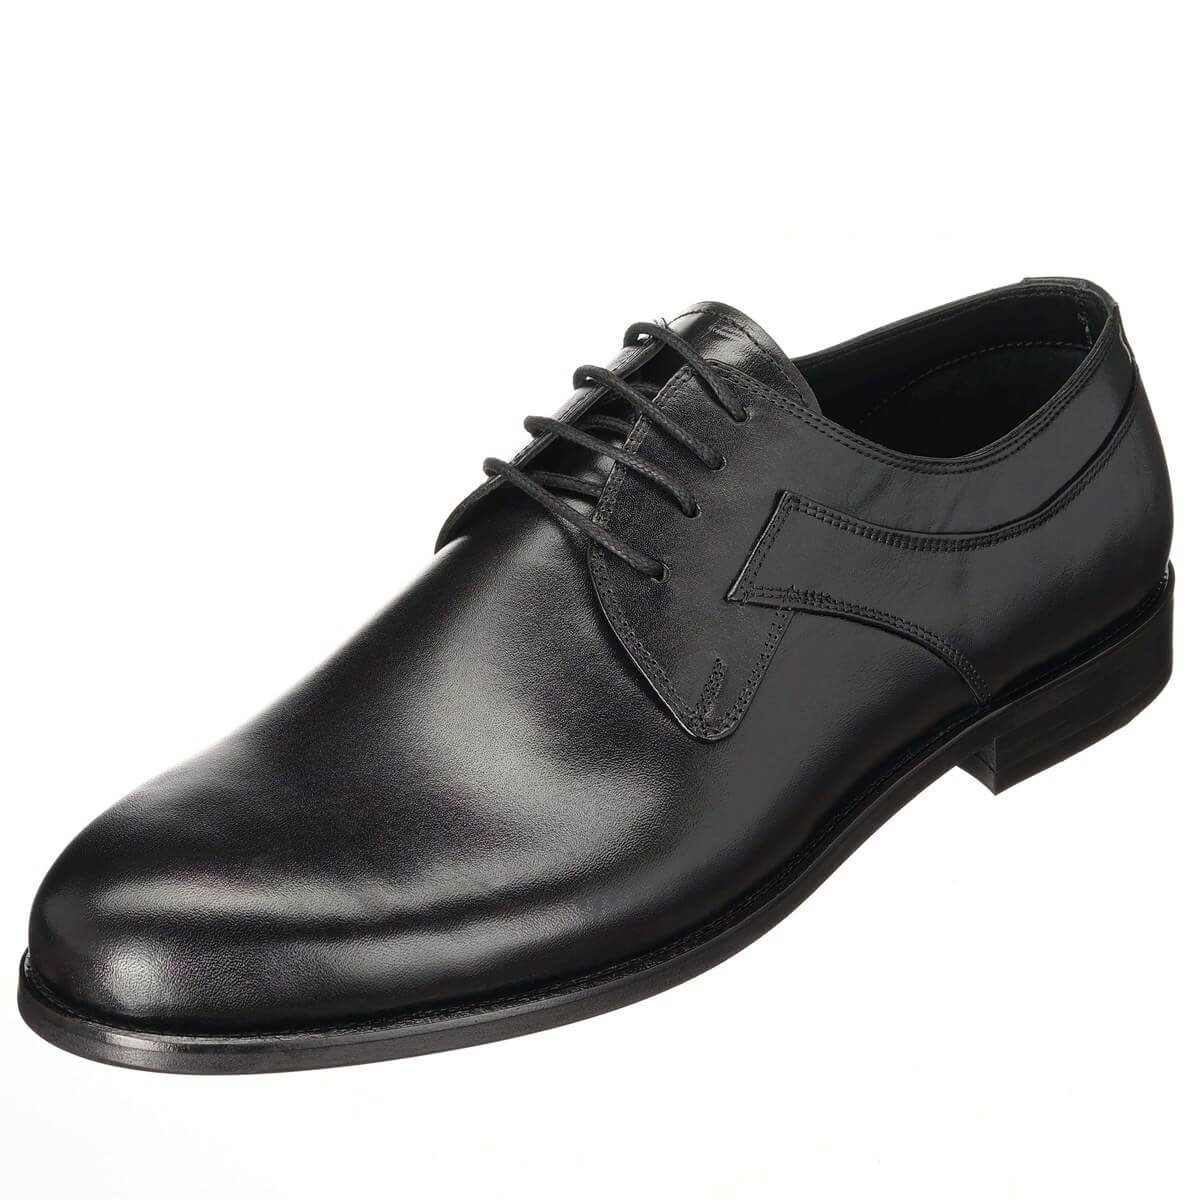 45,46,47,48,49,50 Numaralarda Siyah Analin Bağlı Üst Kalite Erkek Büyük  Numara Klasik Ayakkabı Rahat Şık Kalıp Vip serisi